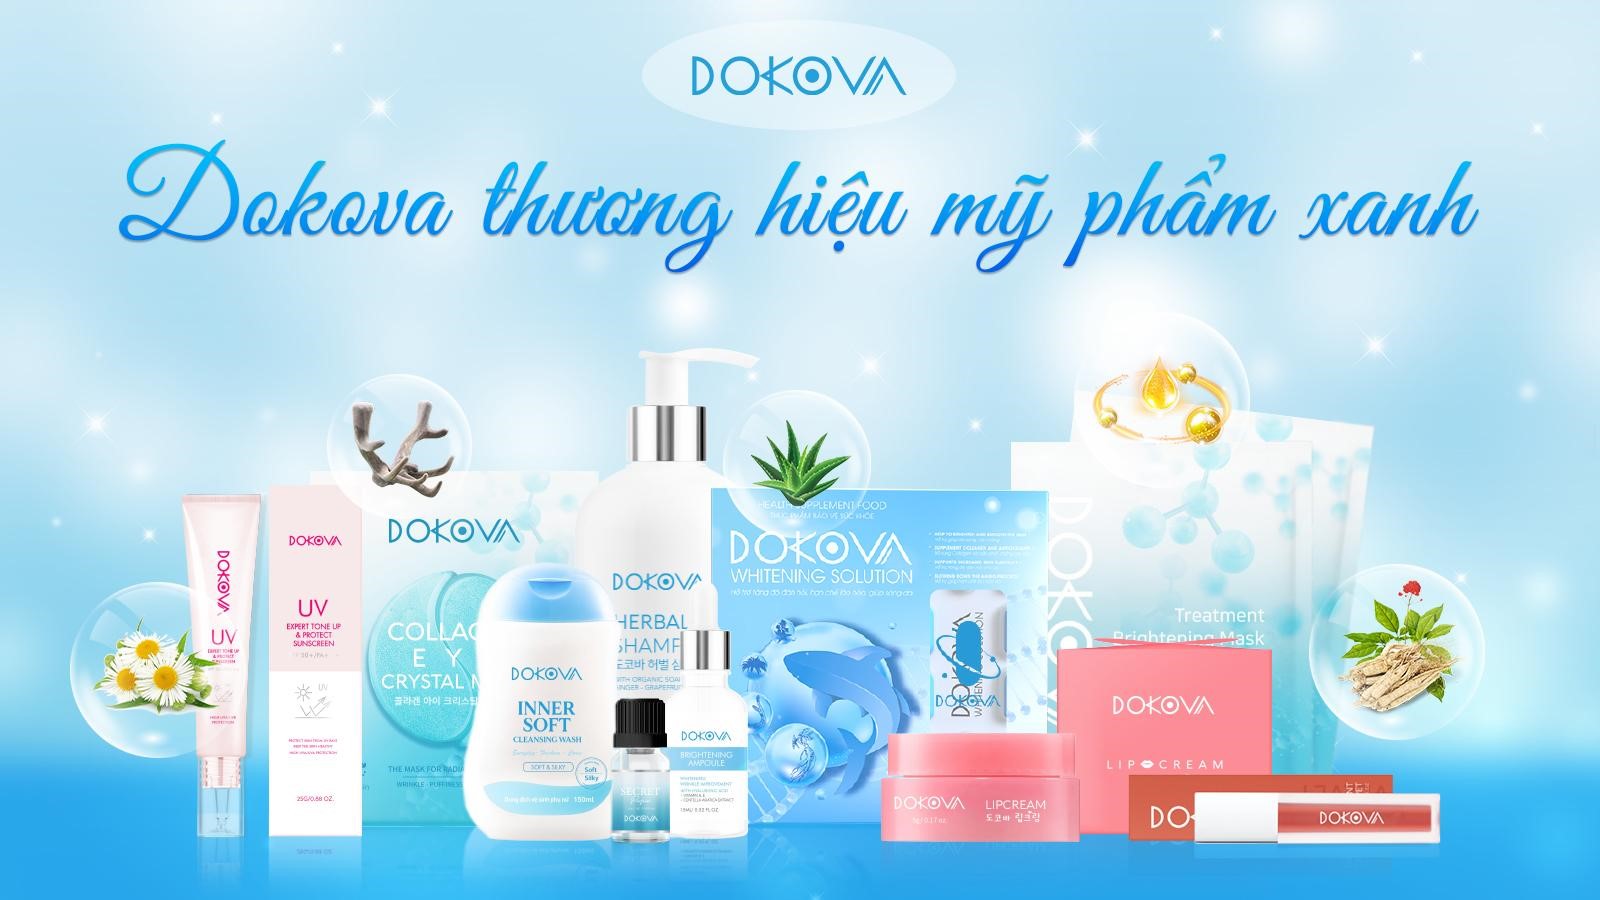  Dokova - mỹ phẩm thiên nhiên dịu nhẹ cho làn da 